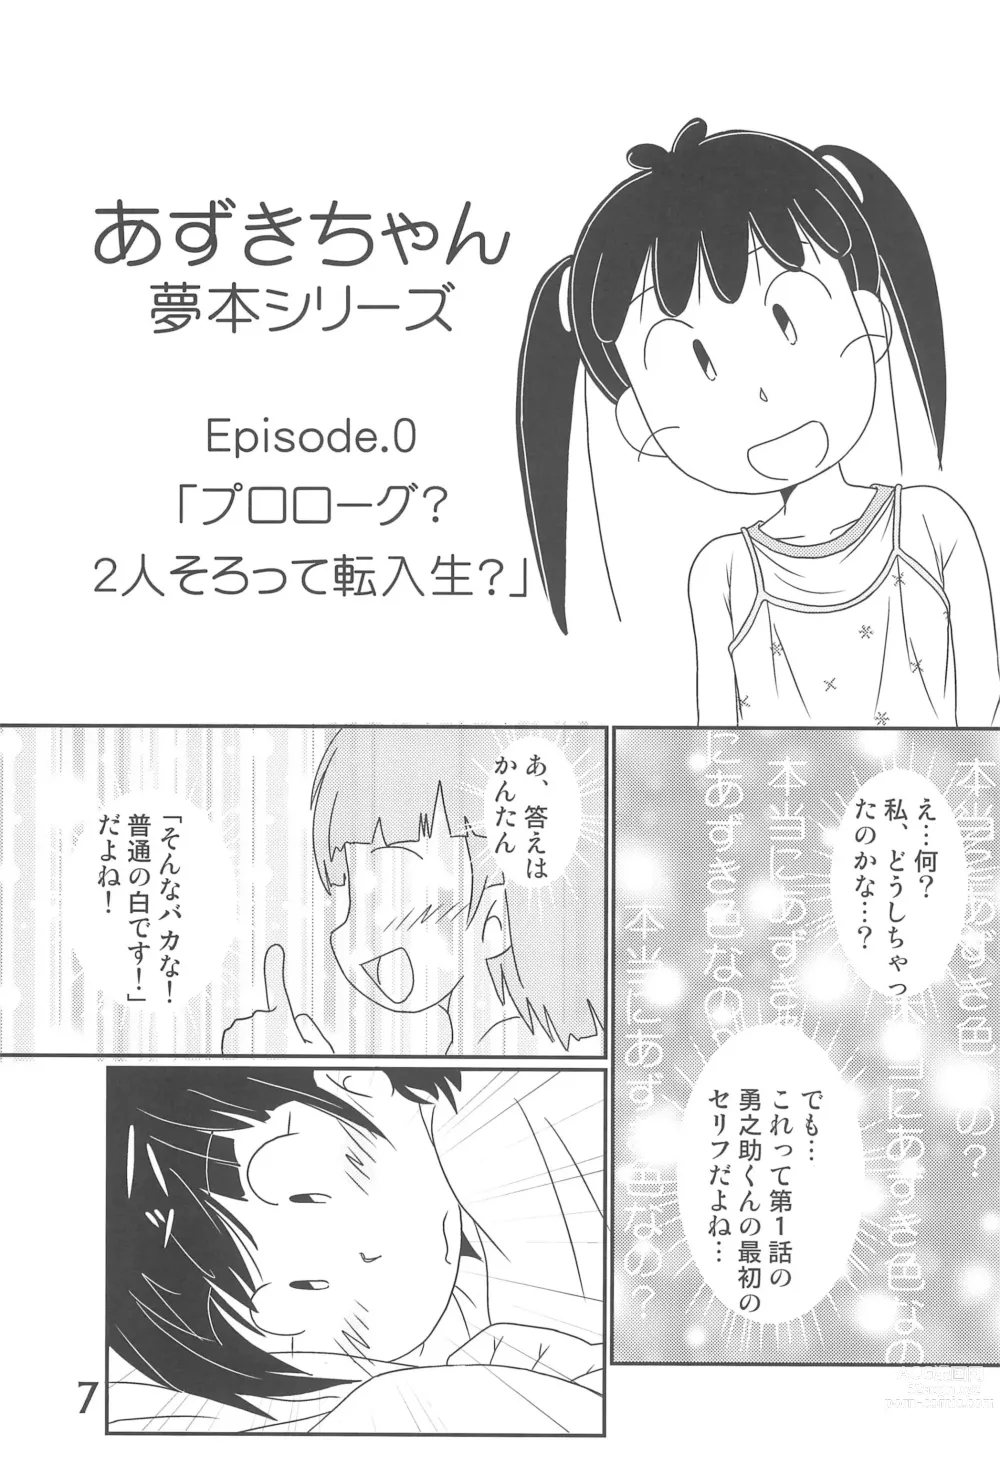 Page 7 of doujinshi Tama ni wa ii janai ka?